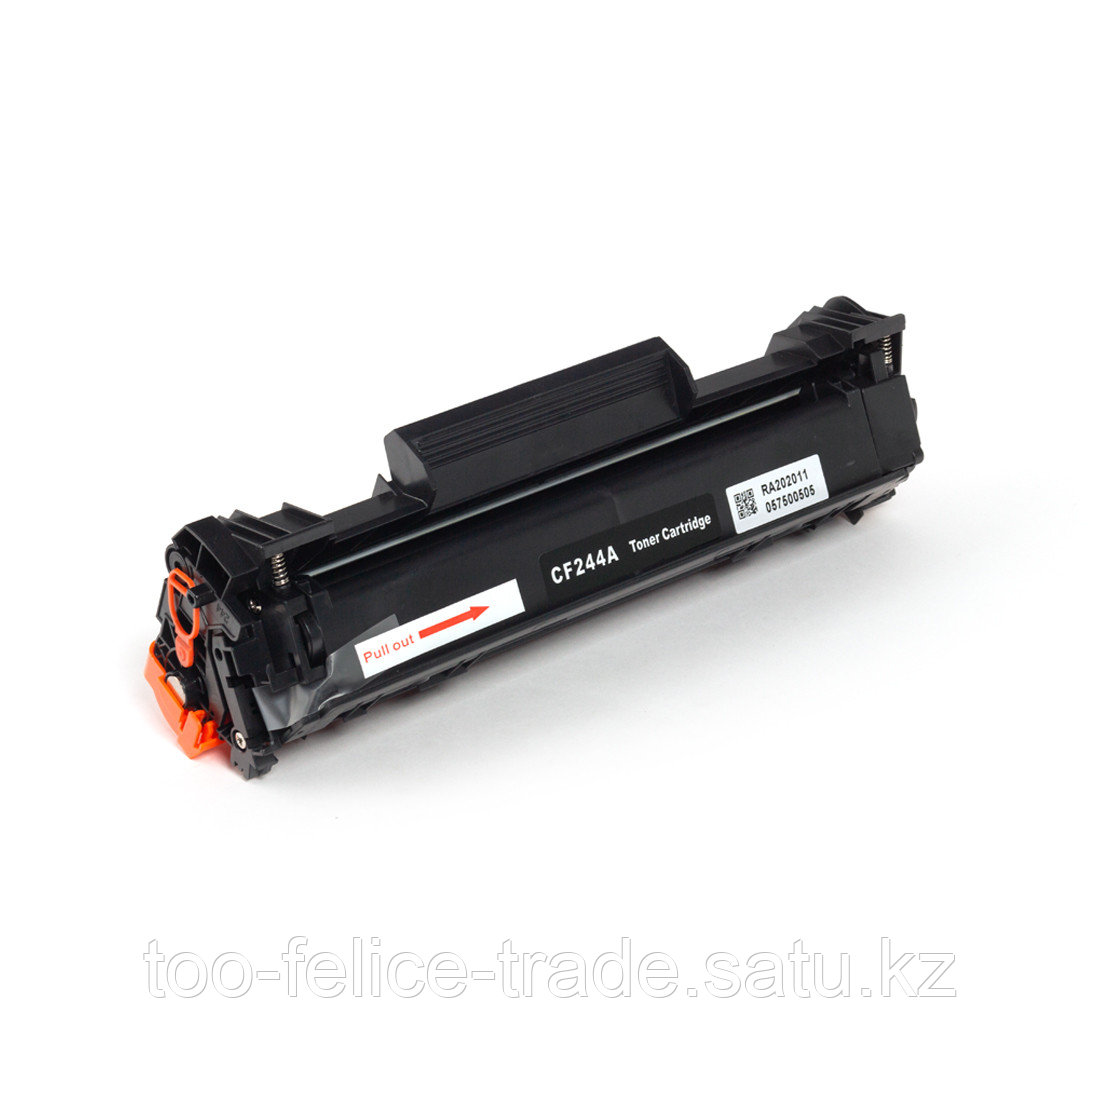 HP CF244A 44A Black LaserJet Toner Cartridge for LaserJet M15/M28 up 1000 pages